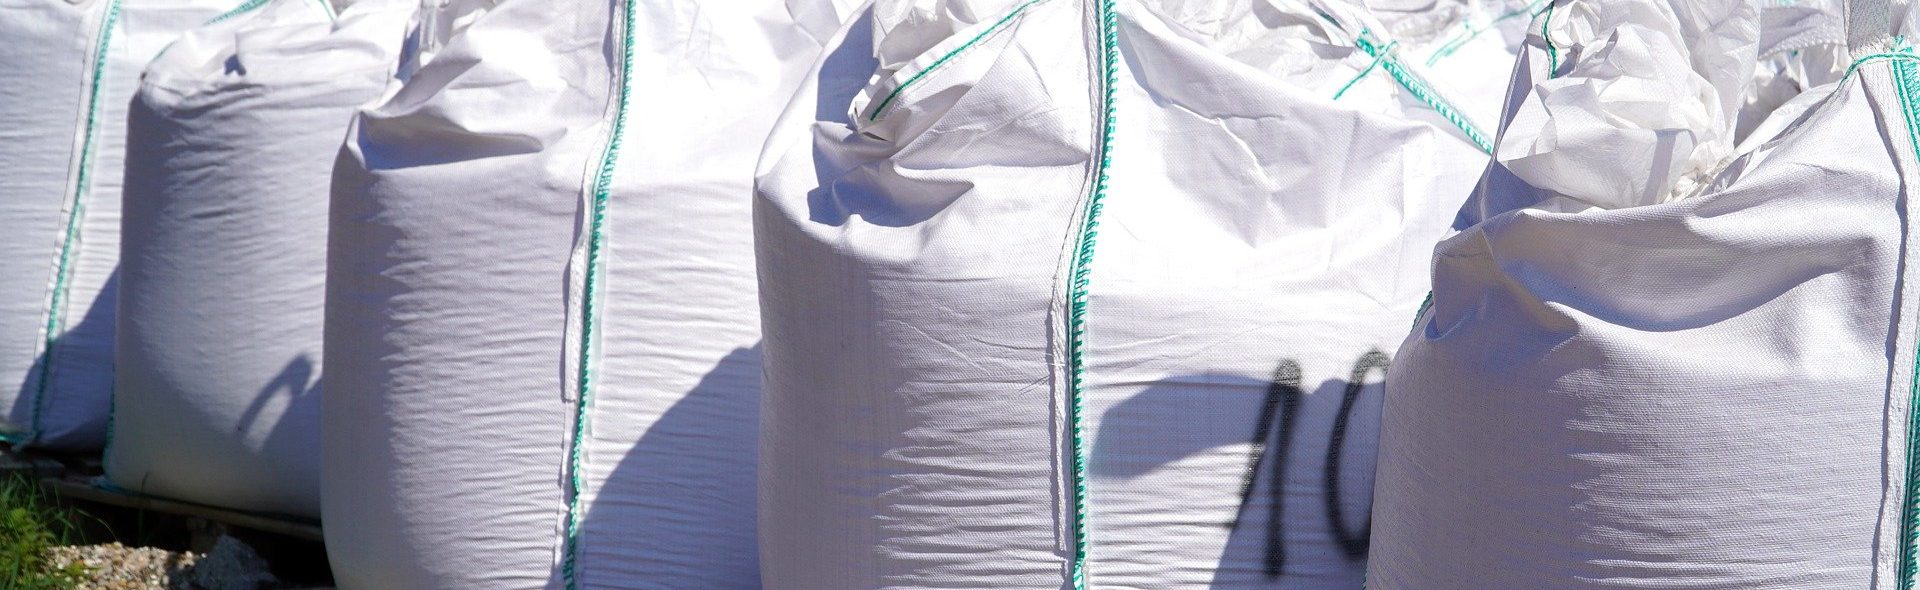 Palette 24 sacs Ciment blanc 20 kg (livraison à domicile) - Mr.Bricolage